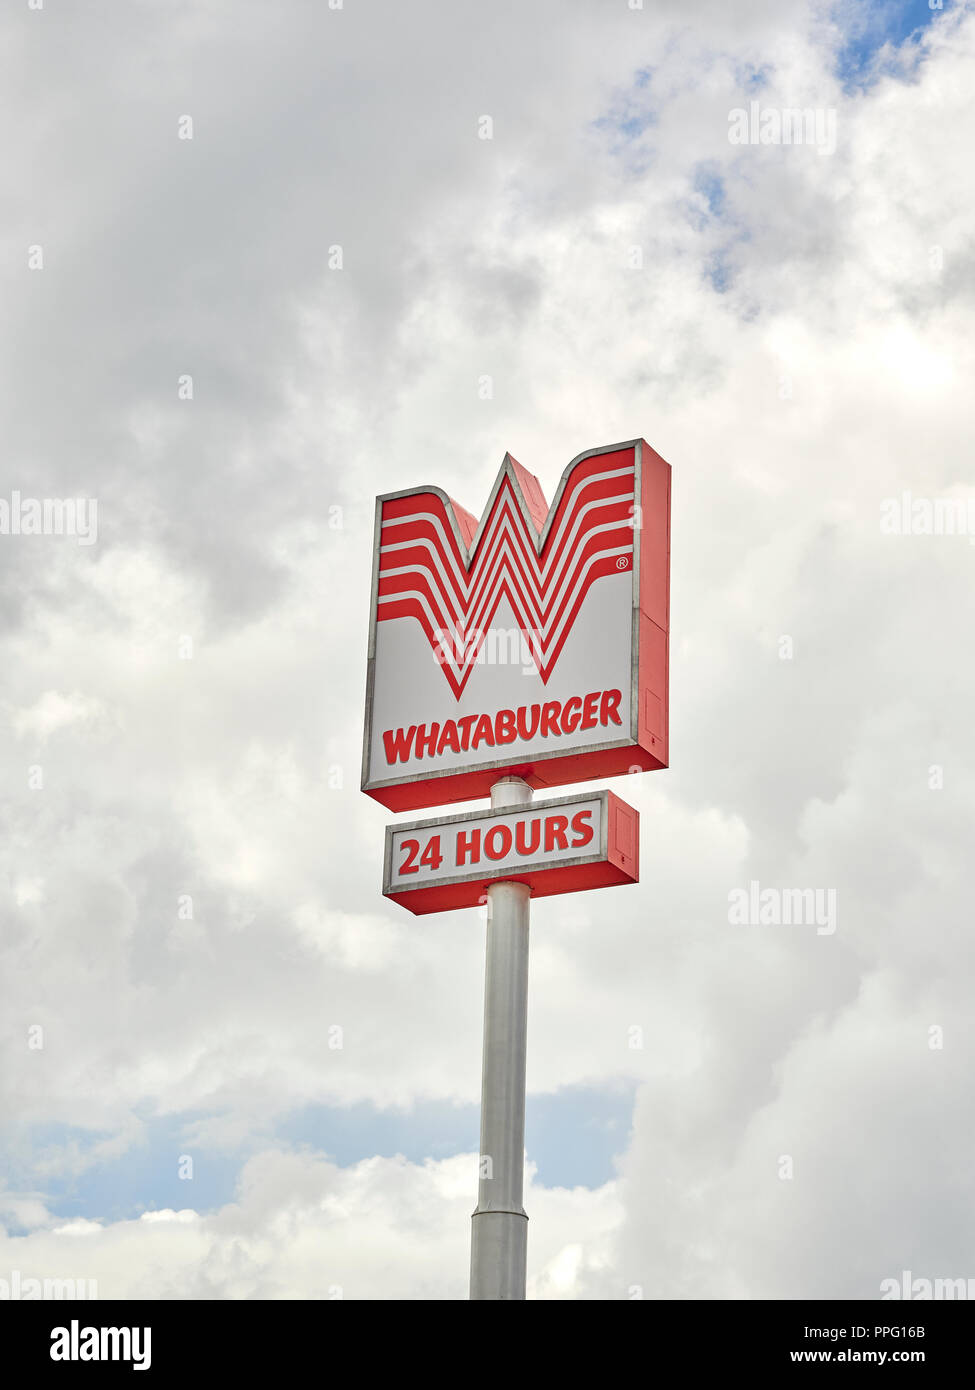 Whataburger fast food Restaurant äußeres Zeichen und Corporate Logo auf hohen Zeichen Umfrage zeigt 24 Stunden Service in der Nähe der Autobahn in Alabama, USA. Stockfoto